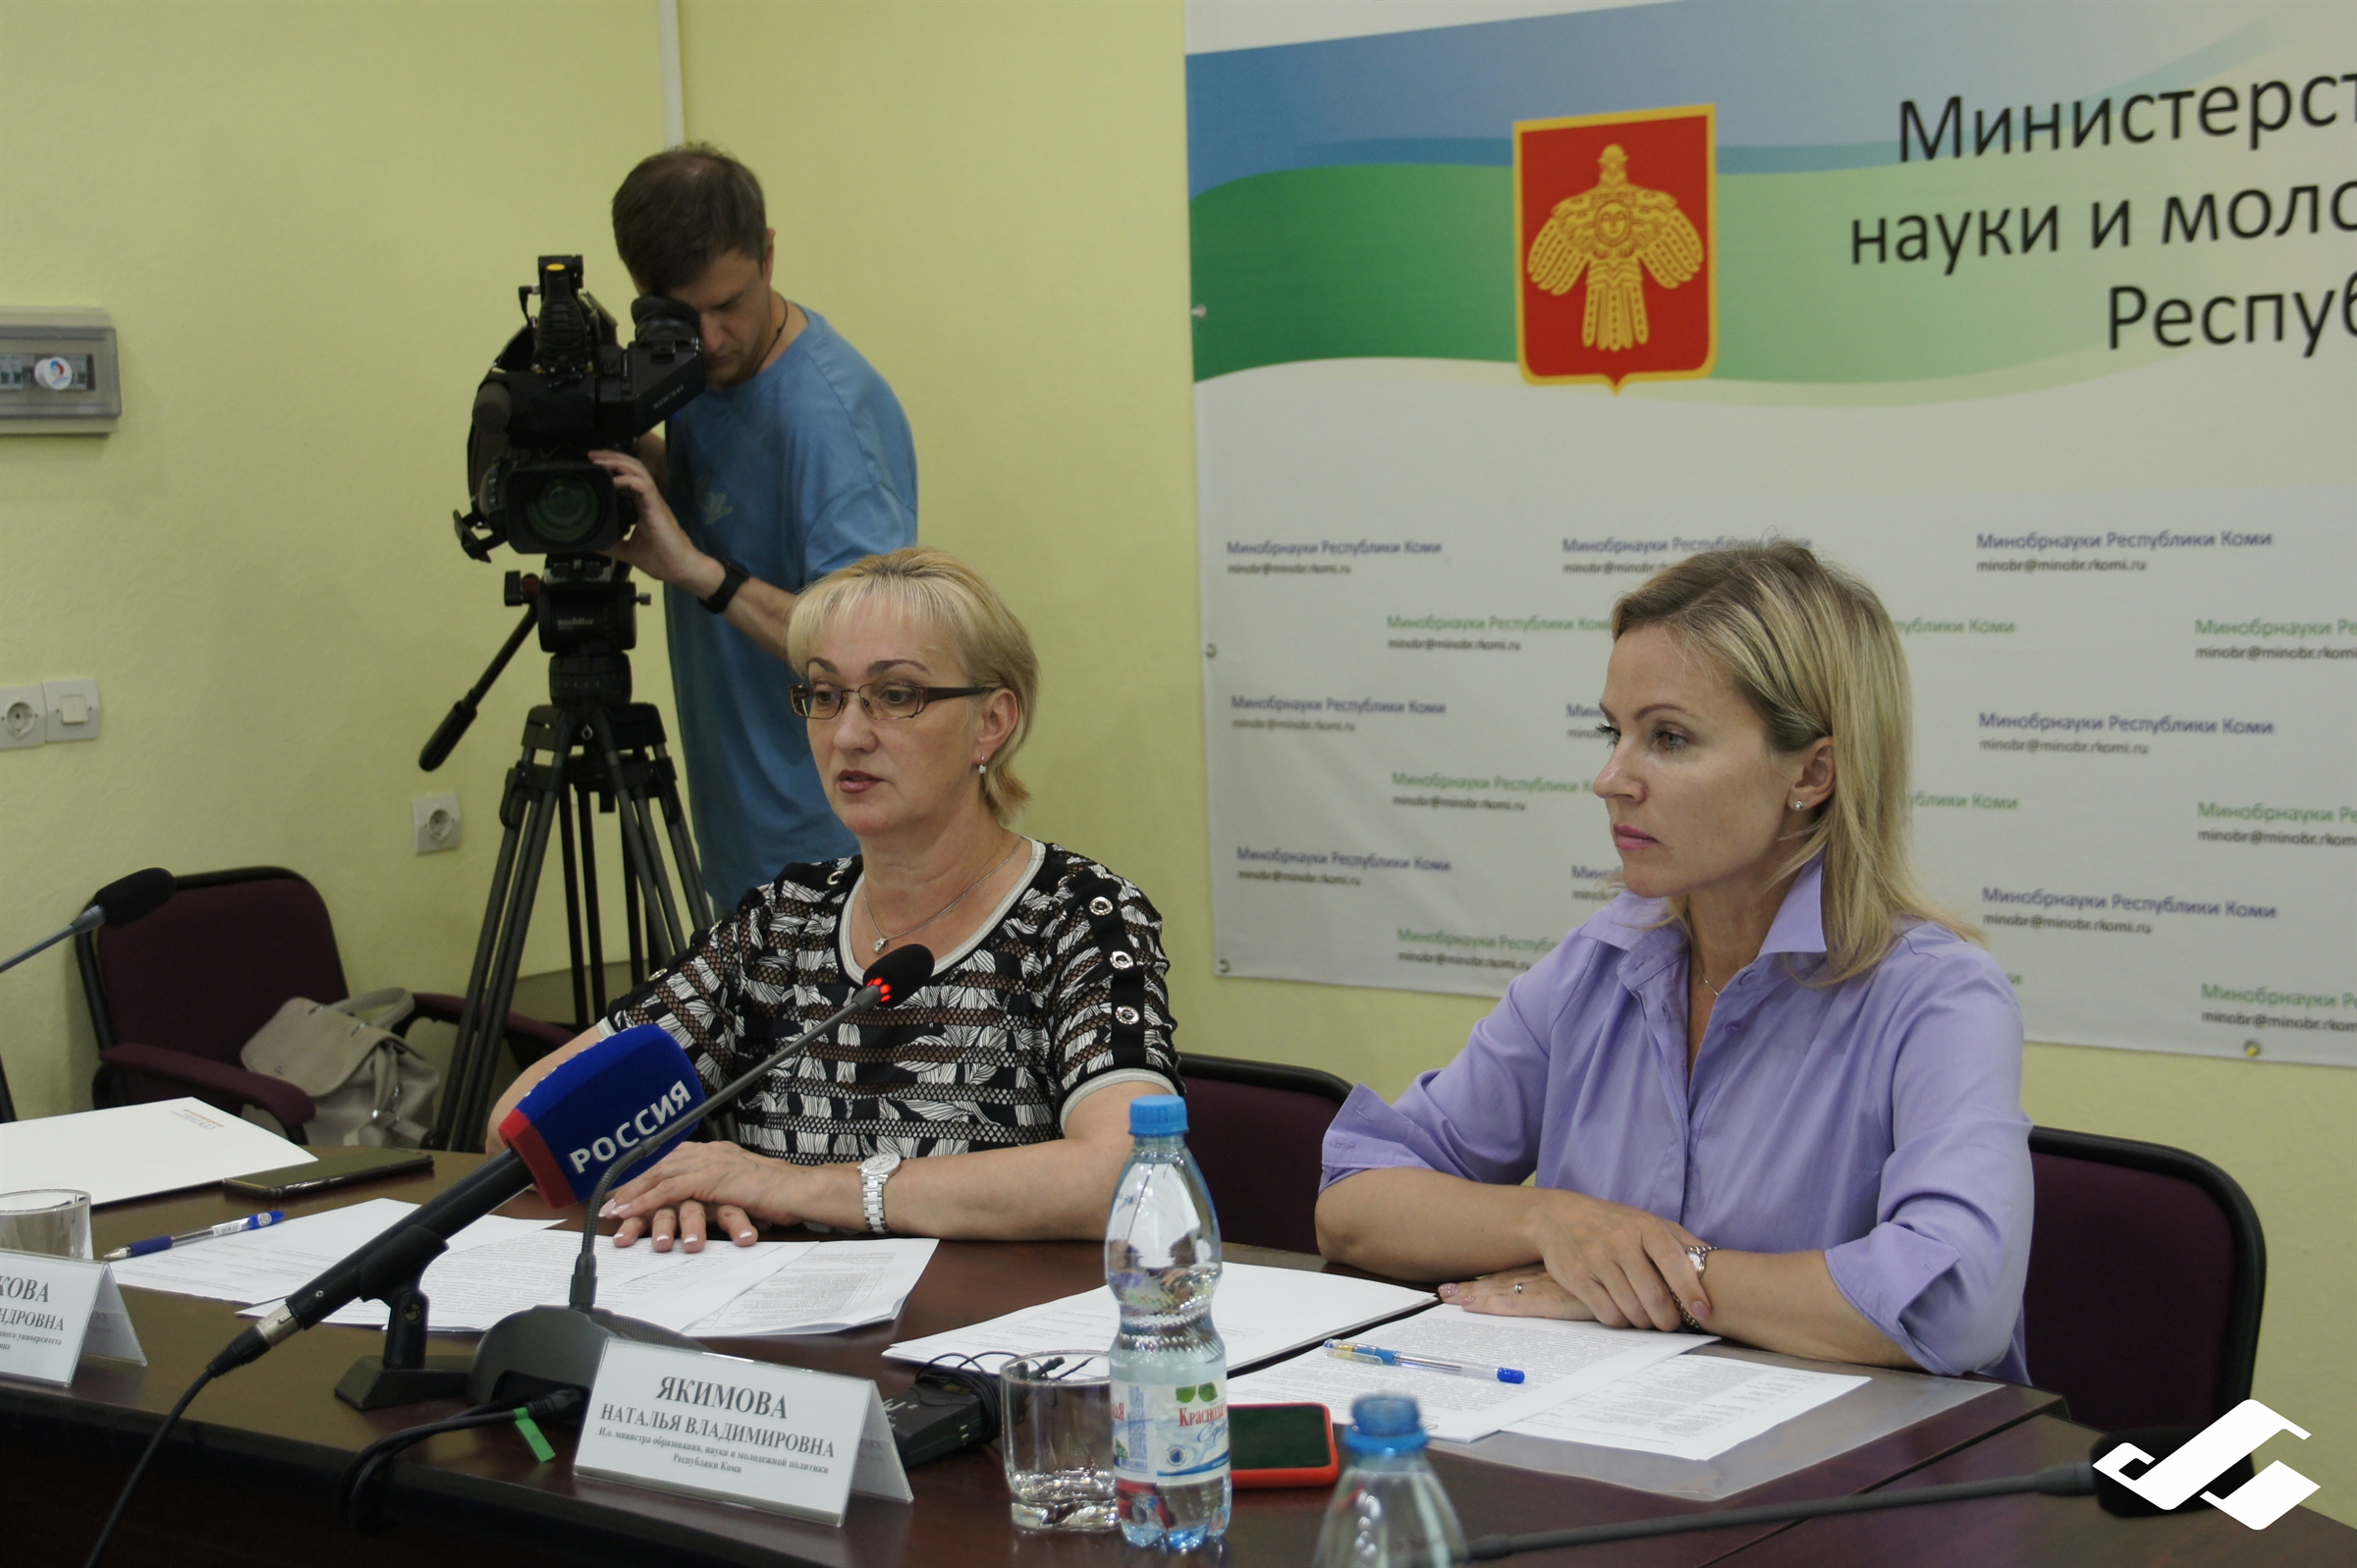 Ректор университета Ольга Сотникова провела заседание Совета ректоров Республики Коми